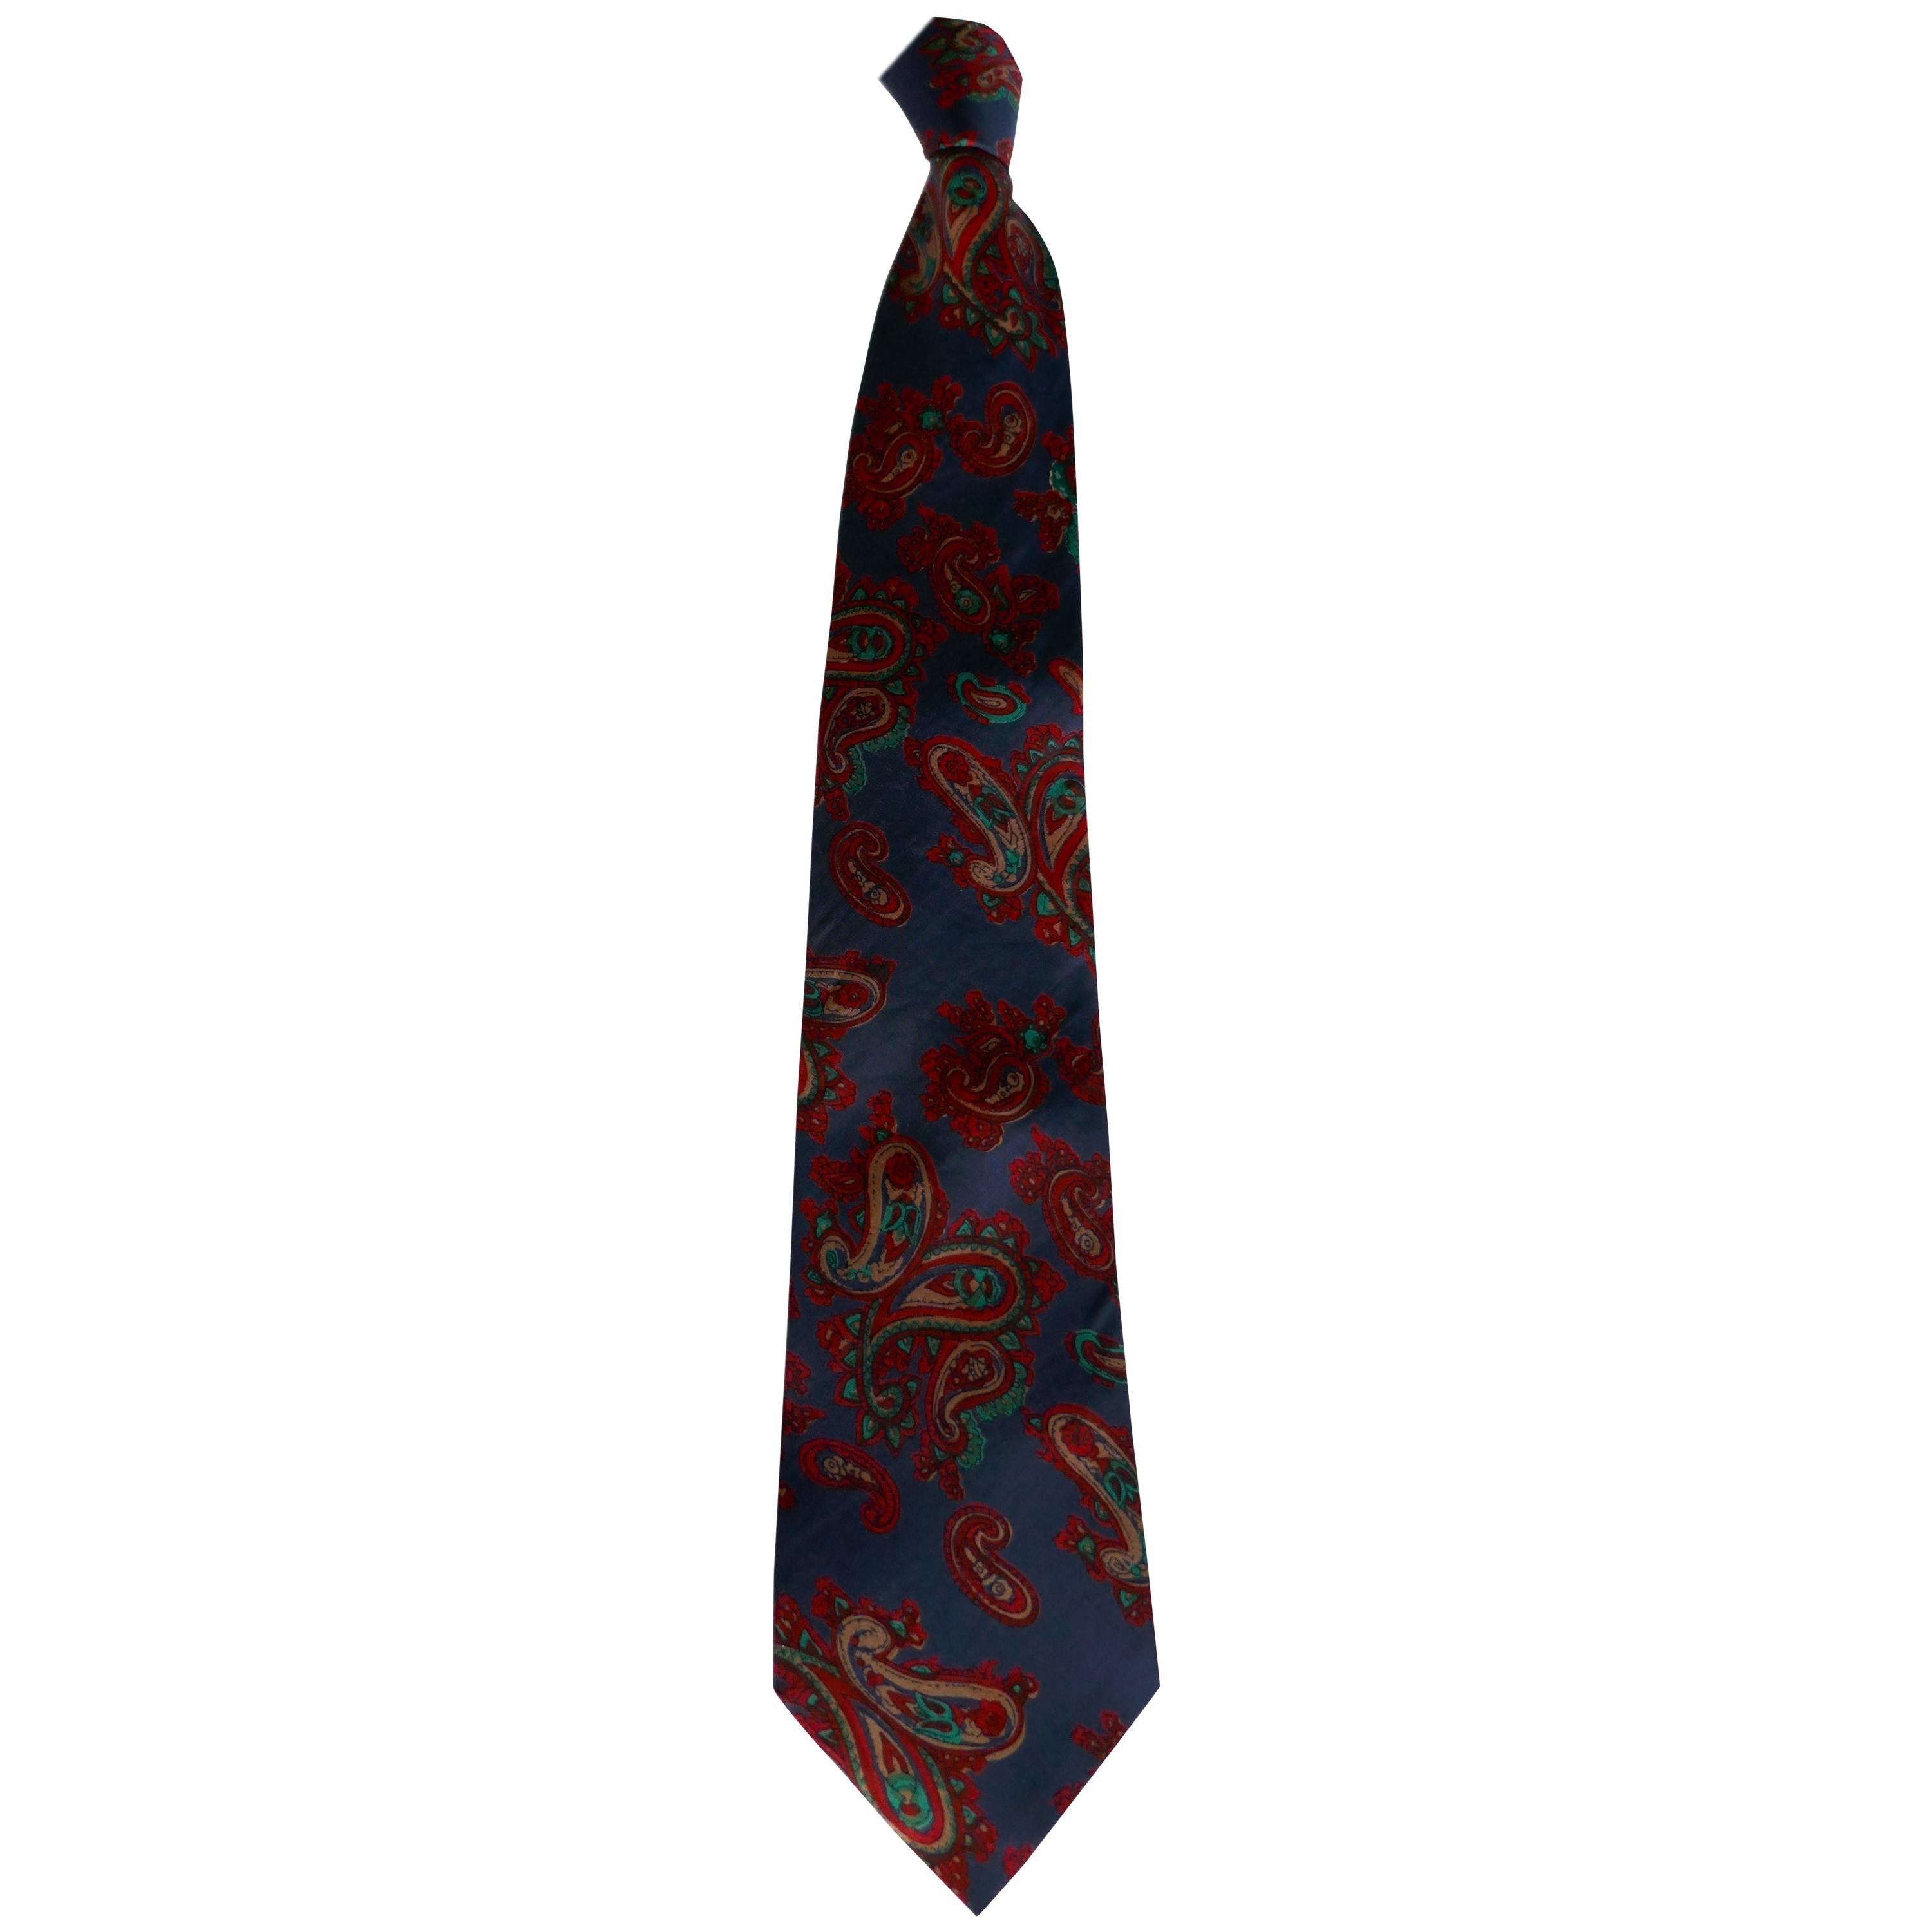 Cravate rétro classique en soie à motif cachemire, années 1960